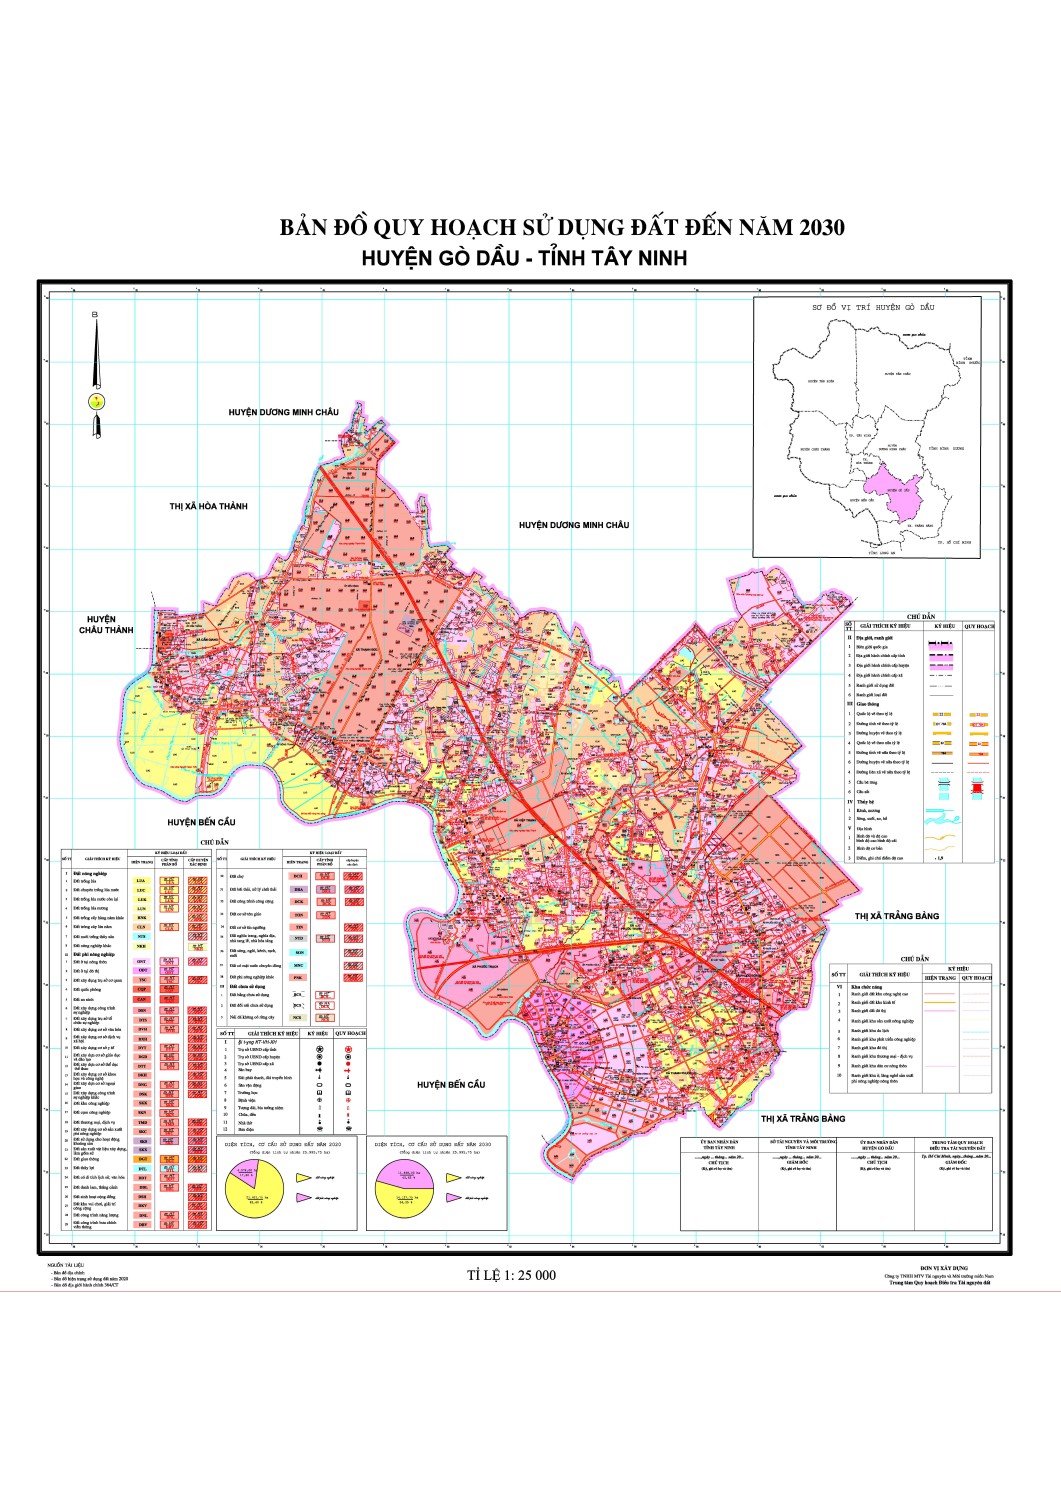 Bản đồ quy hoạch sử dụng đất huyện Gò Dầu sẽ giúp bạn có được cái nhìn tổng quan về tiềm năng phát triển của khu vực này. Hãy cùng xem hình ảnh liên quan để hiểu rõ hơn về các khu vực đang được quy hoạch và những cơ hội mới ra đời trong tương lai.